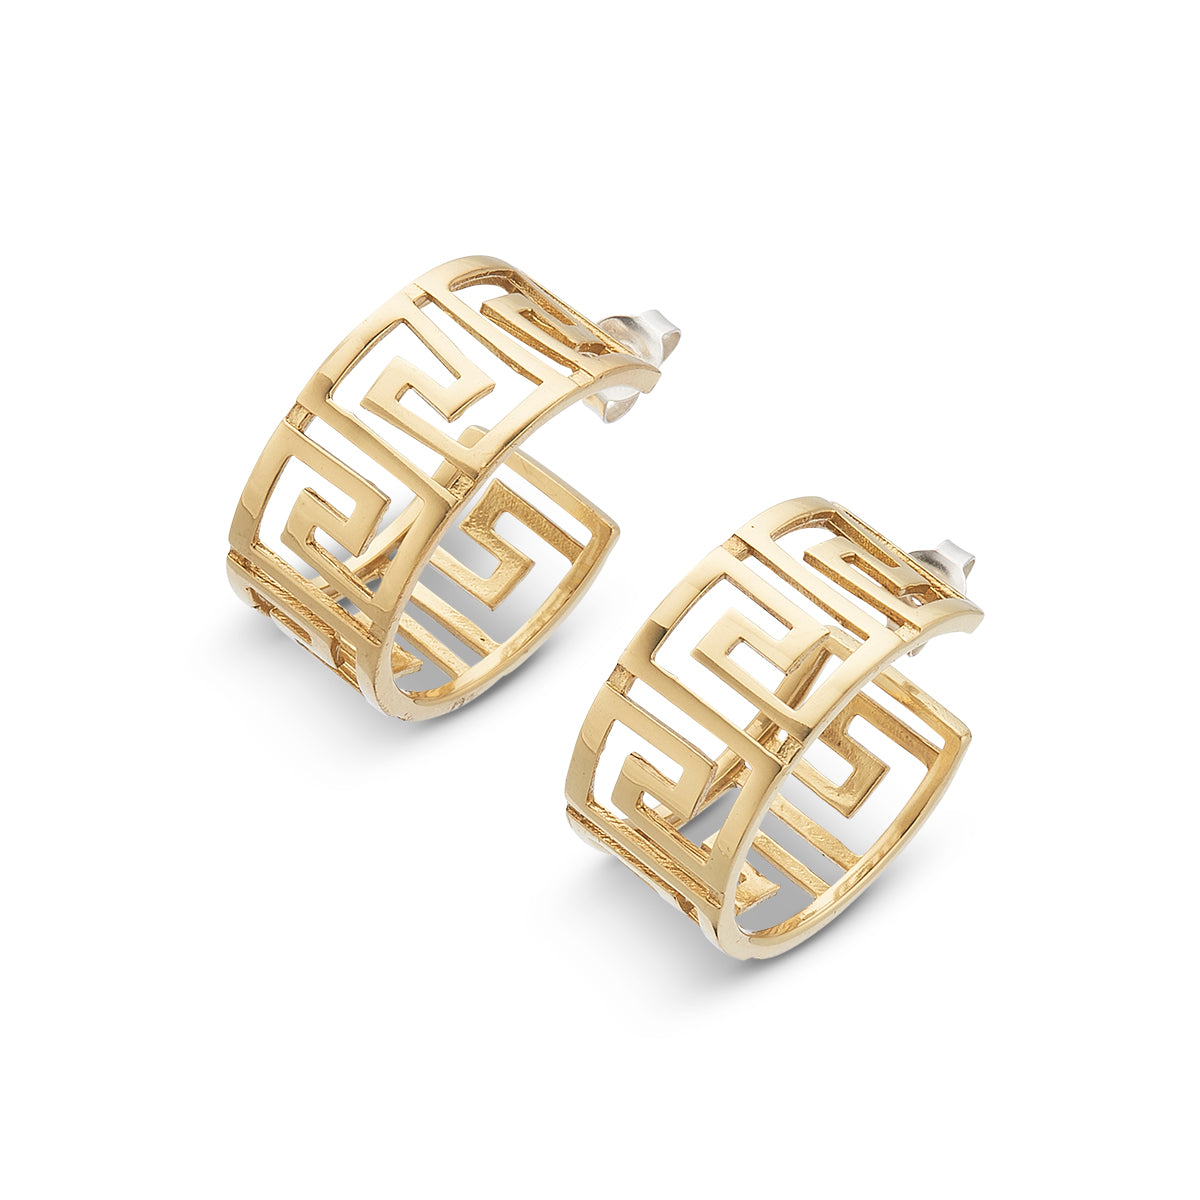 Greek golden key hoop earrings